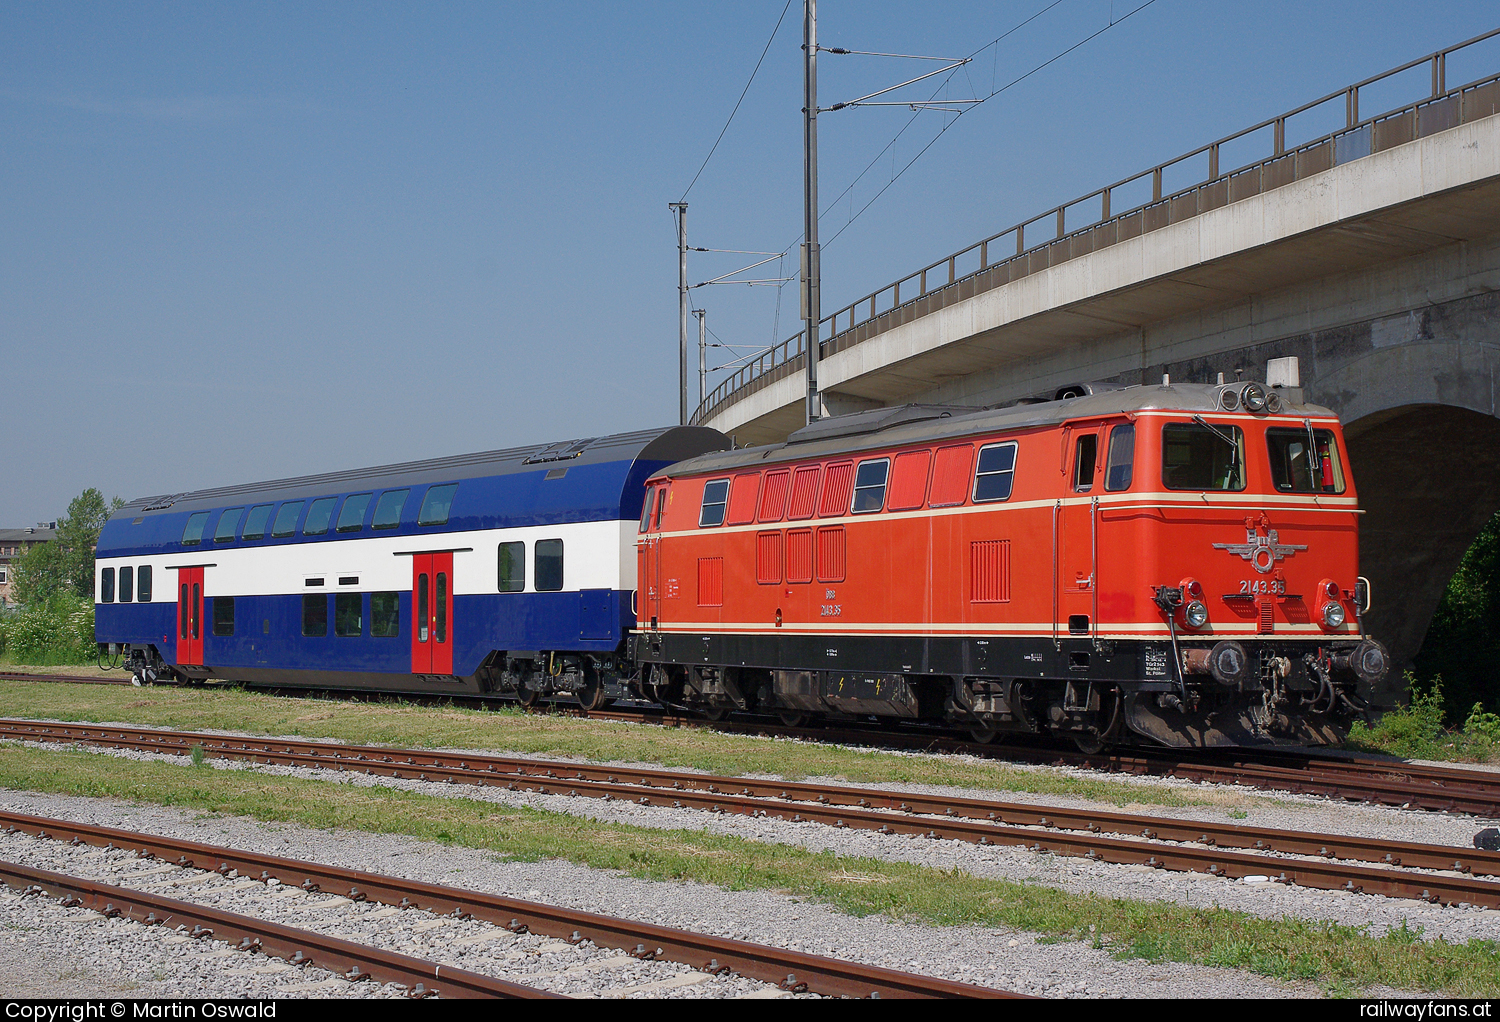 ÖBB 2143 035 in Wien Siemensstraße (Rail Tec Arsenal) - Überstellung eines SBB-Wagens in die Klimakammer der Rail Tec Arsenal (RTA).  Nordbahn | Wien Praterstern - Breclav Railwayfans